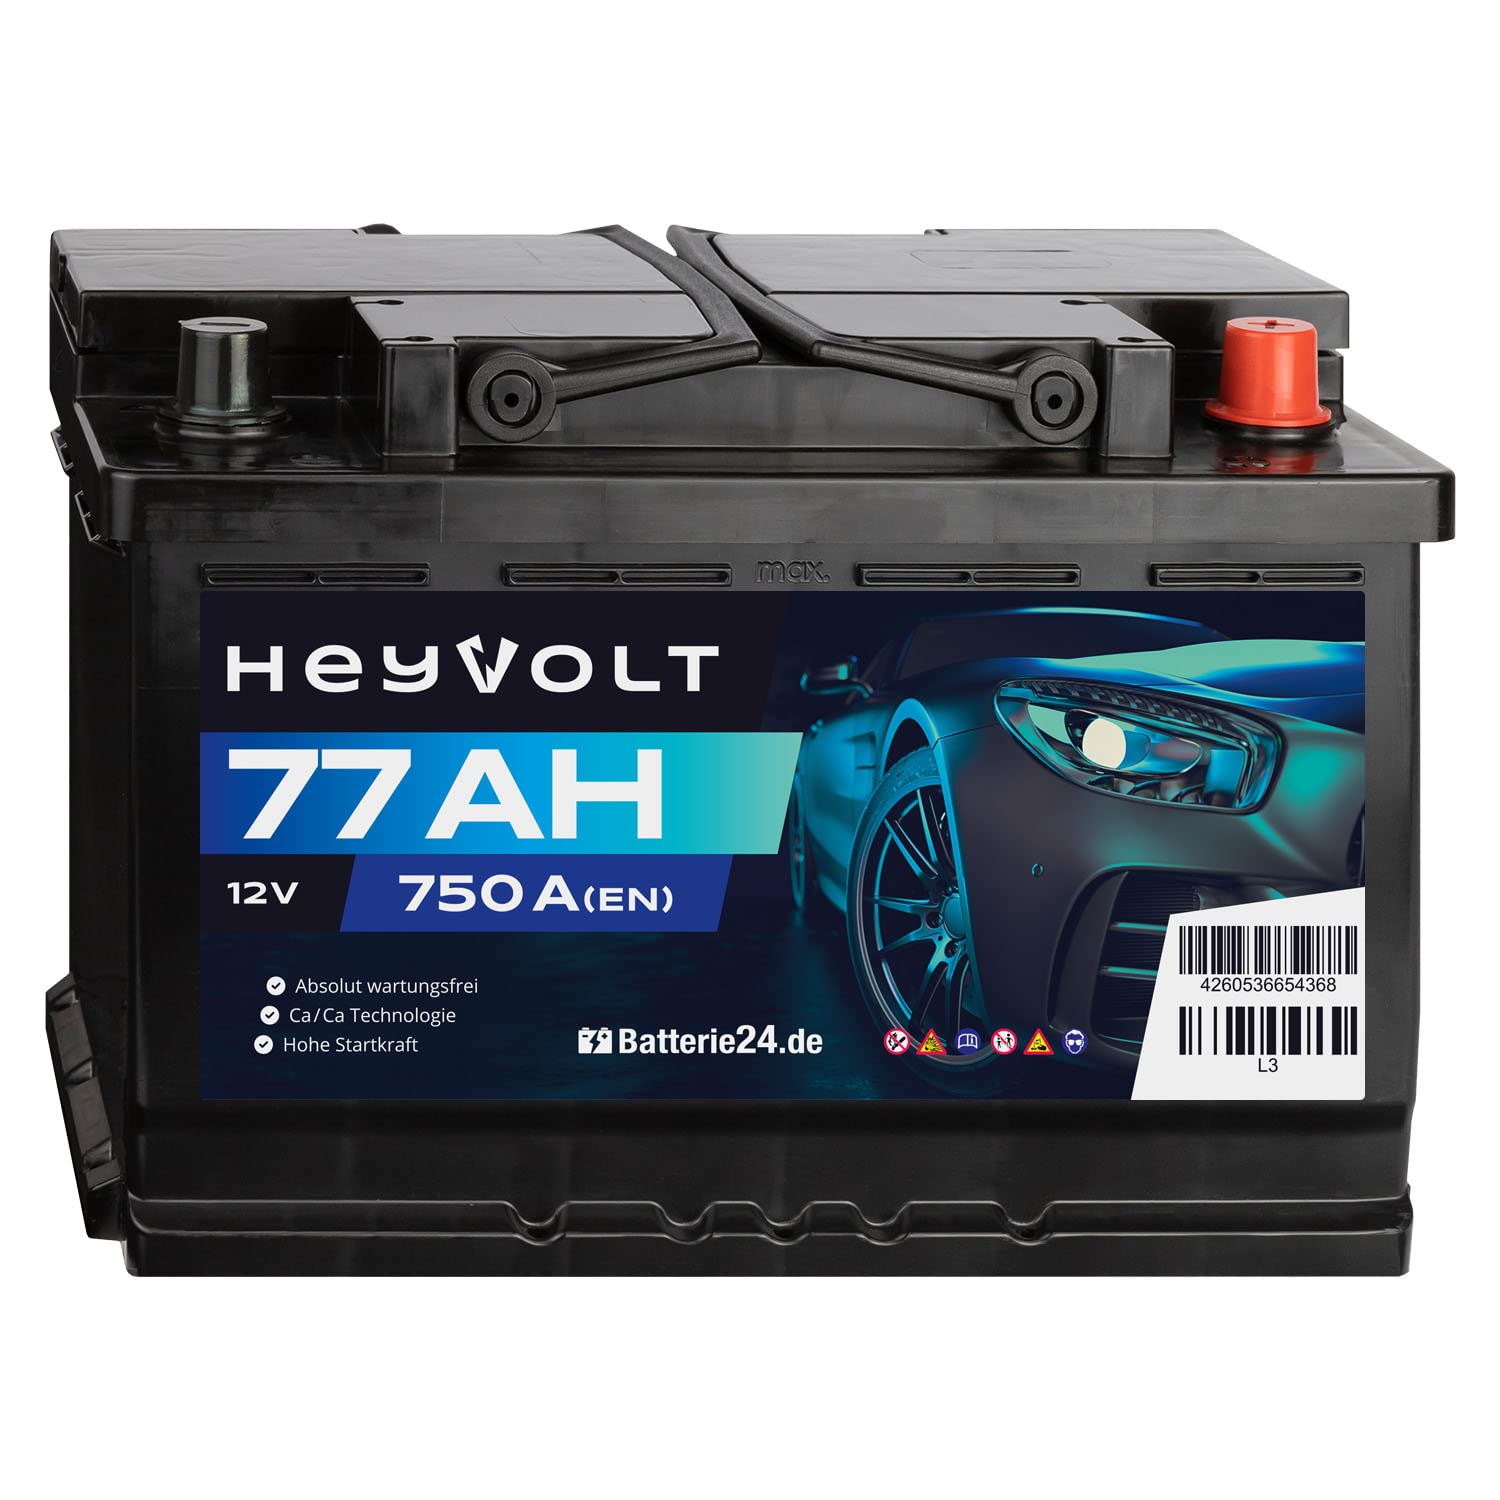 HeyVolt Autobatterie 12V 77Ah 750A/EN Starterbatterie, absolut wartungsfrei ersetzt 68Ah 70Ah 72Ah 74Ah 75Ah von Batterie24.de